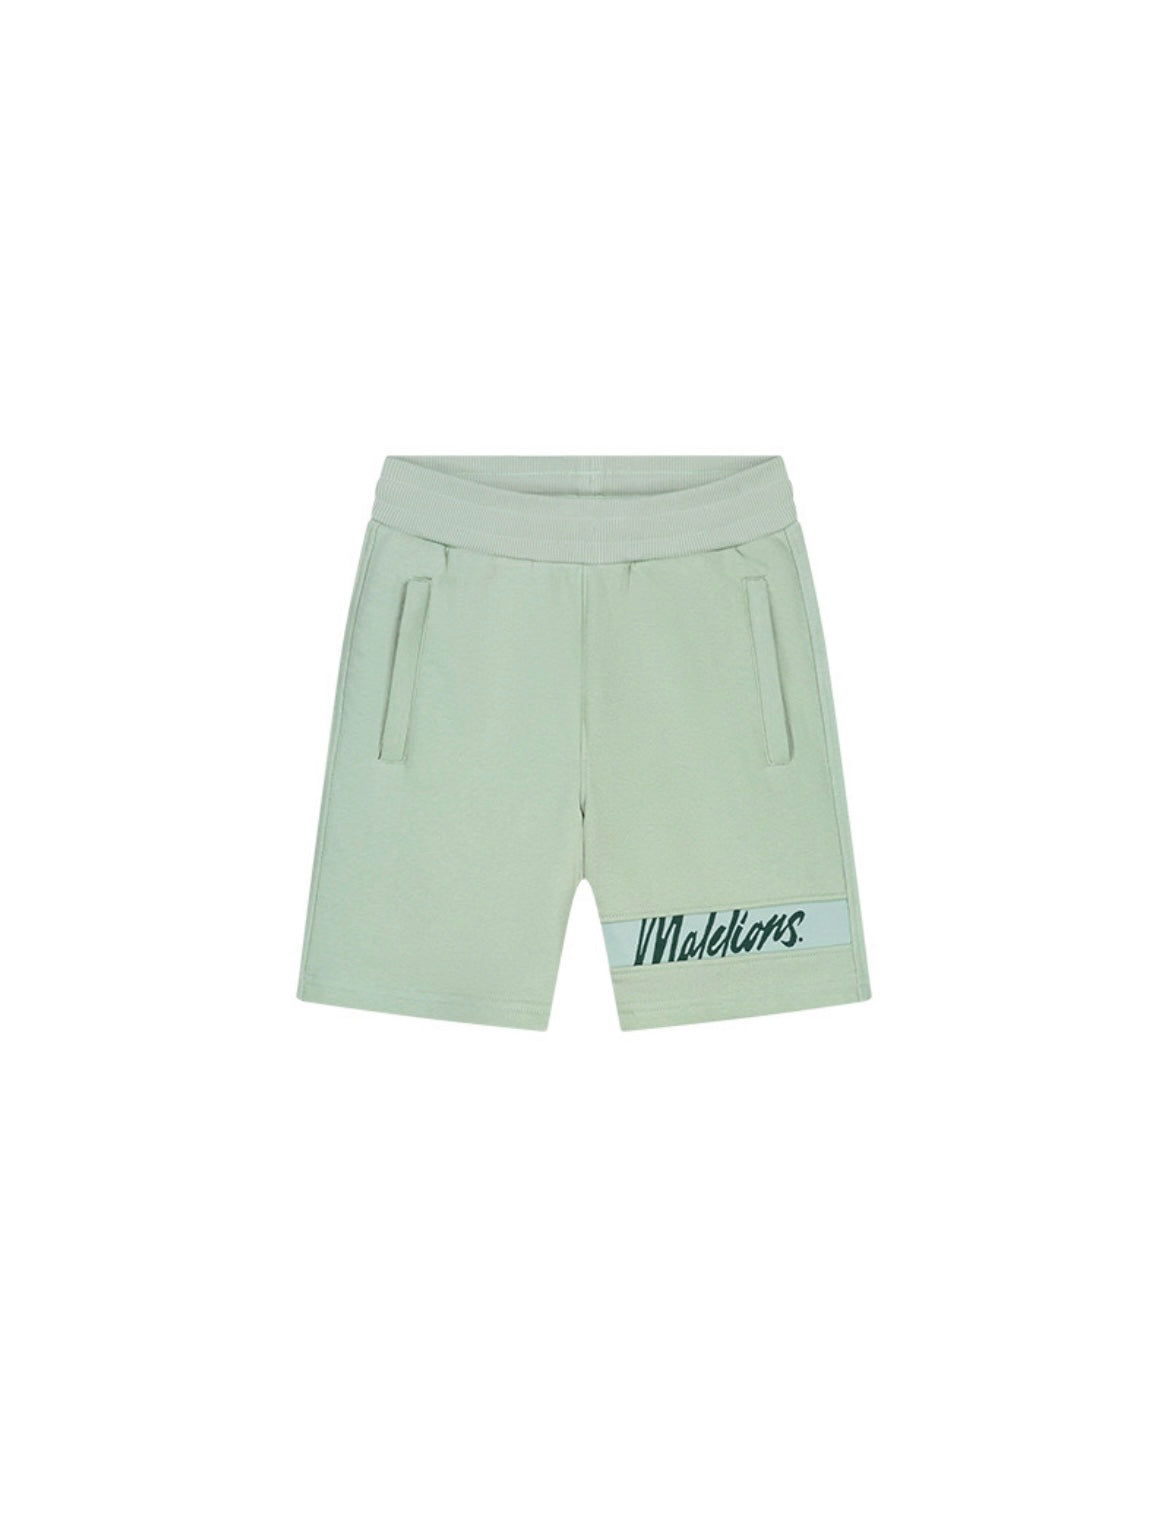 Malelions junior captain shorts 2.0  - aqua grey/mint